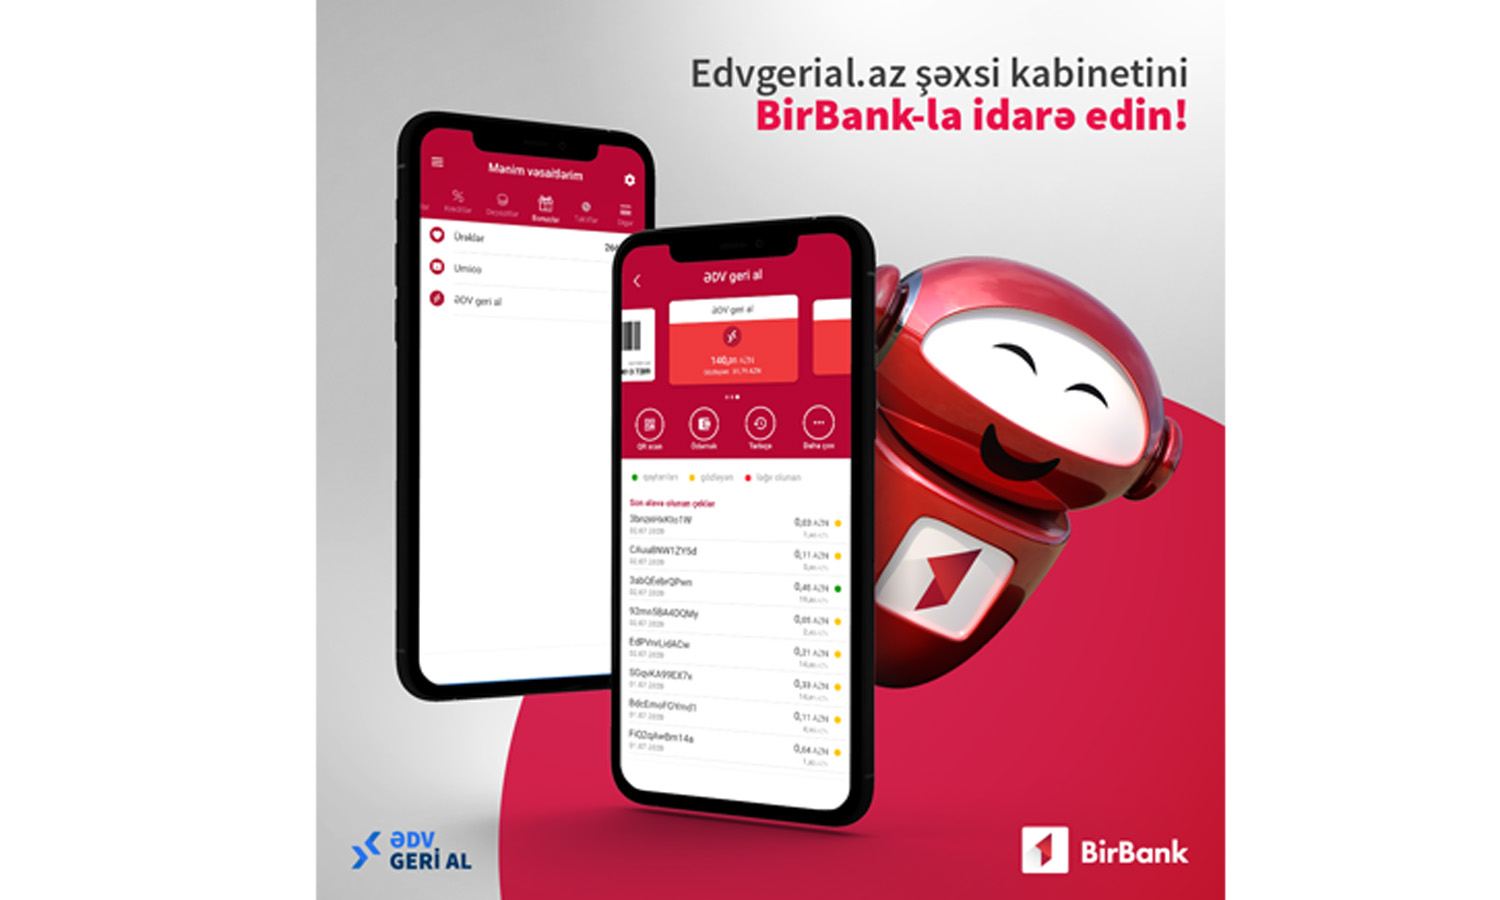 BirBank mobil tətbiqi vasitəsilə www.edvgerial.az portalındakı şəxsi kabinetinizi idarə edin